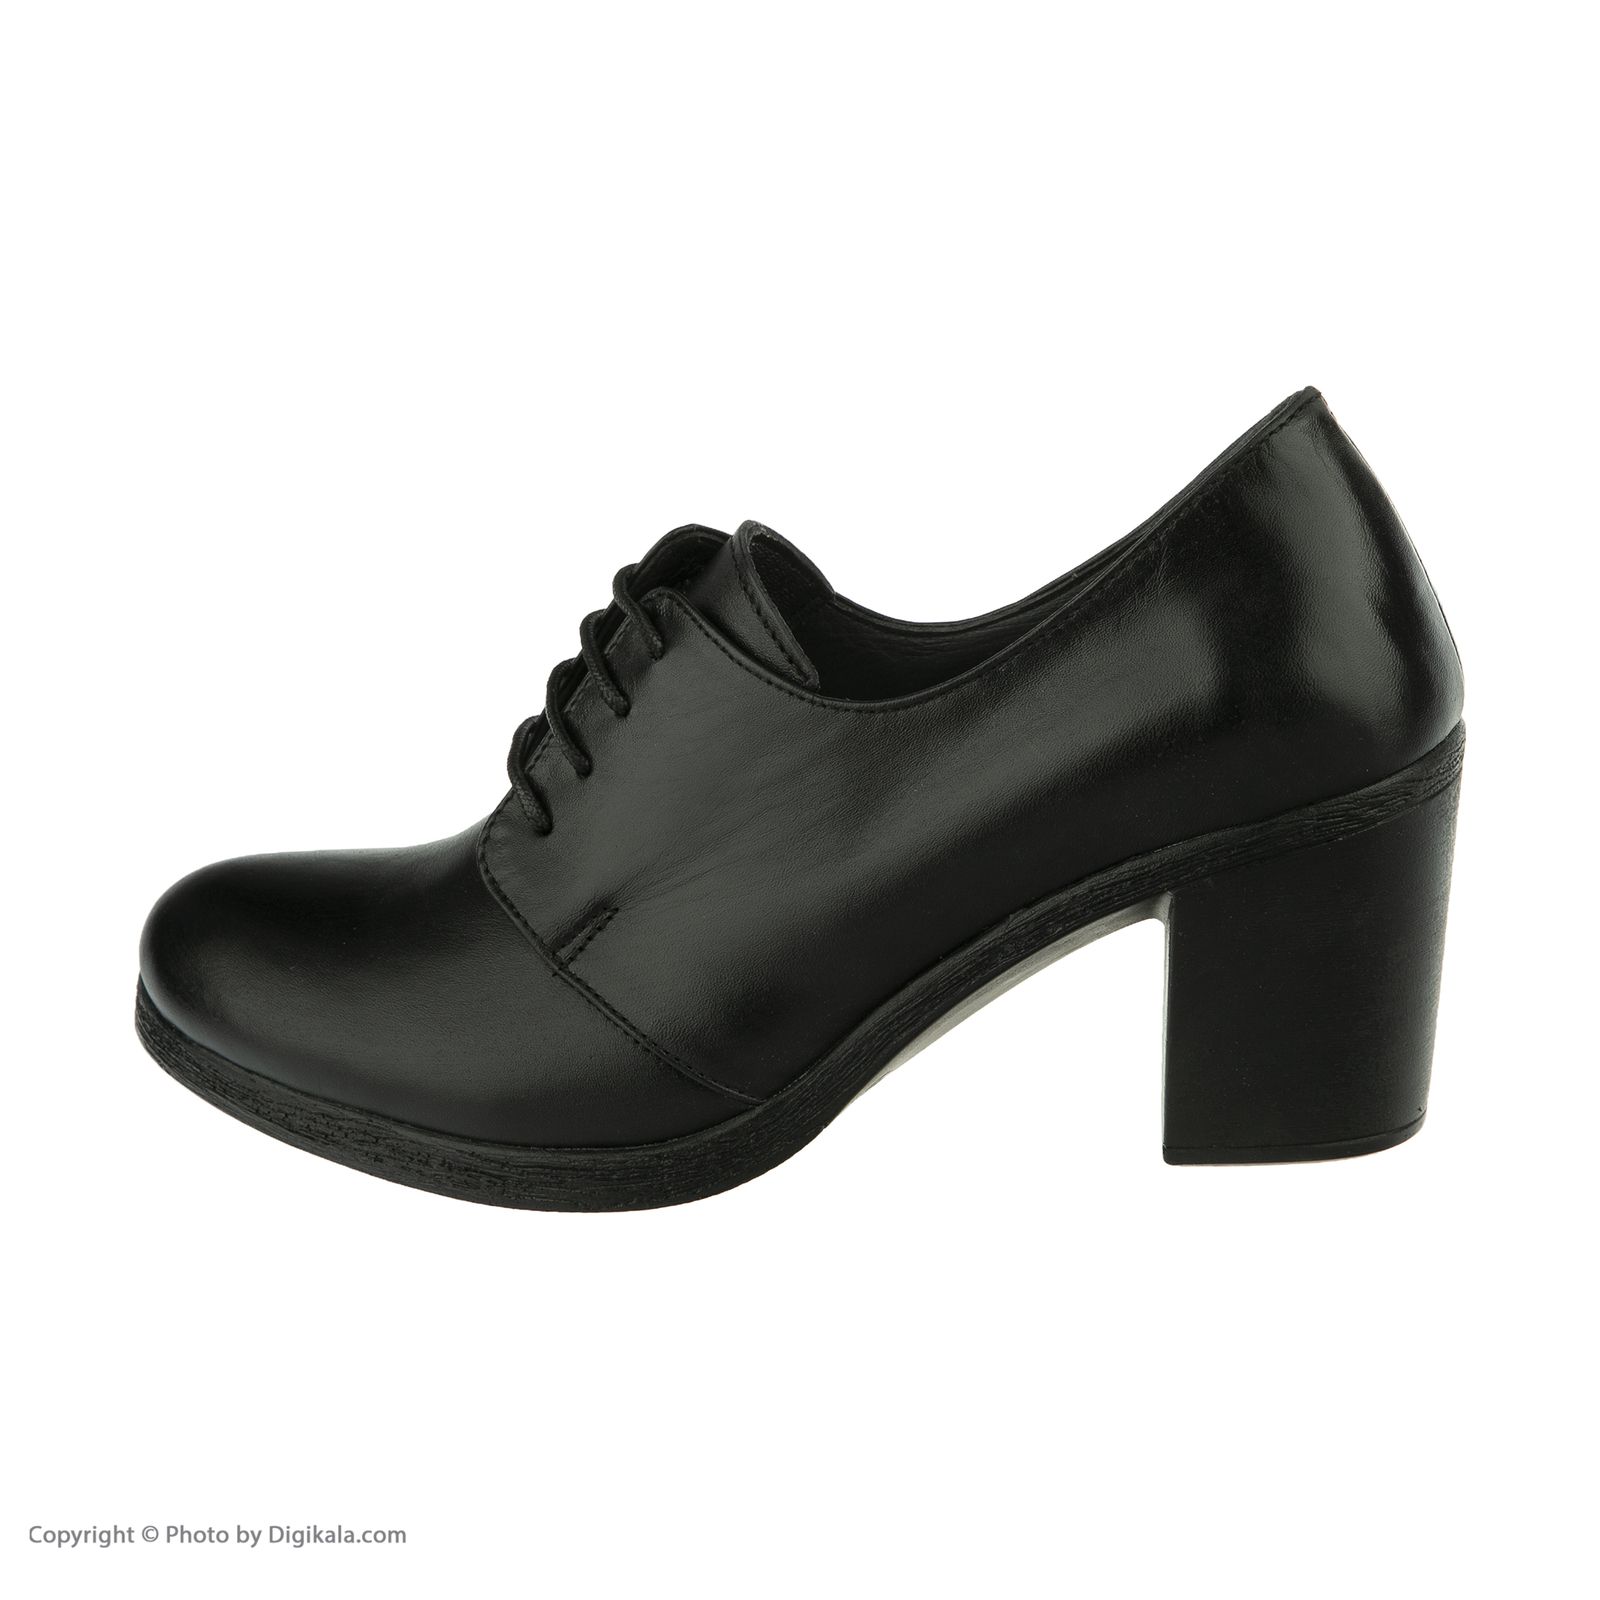  کفش زنانه دلفارد مدل 5m02a500101 -  - 7